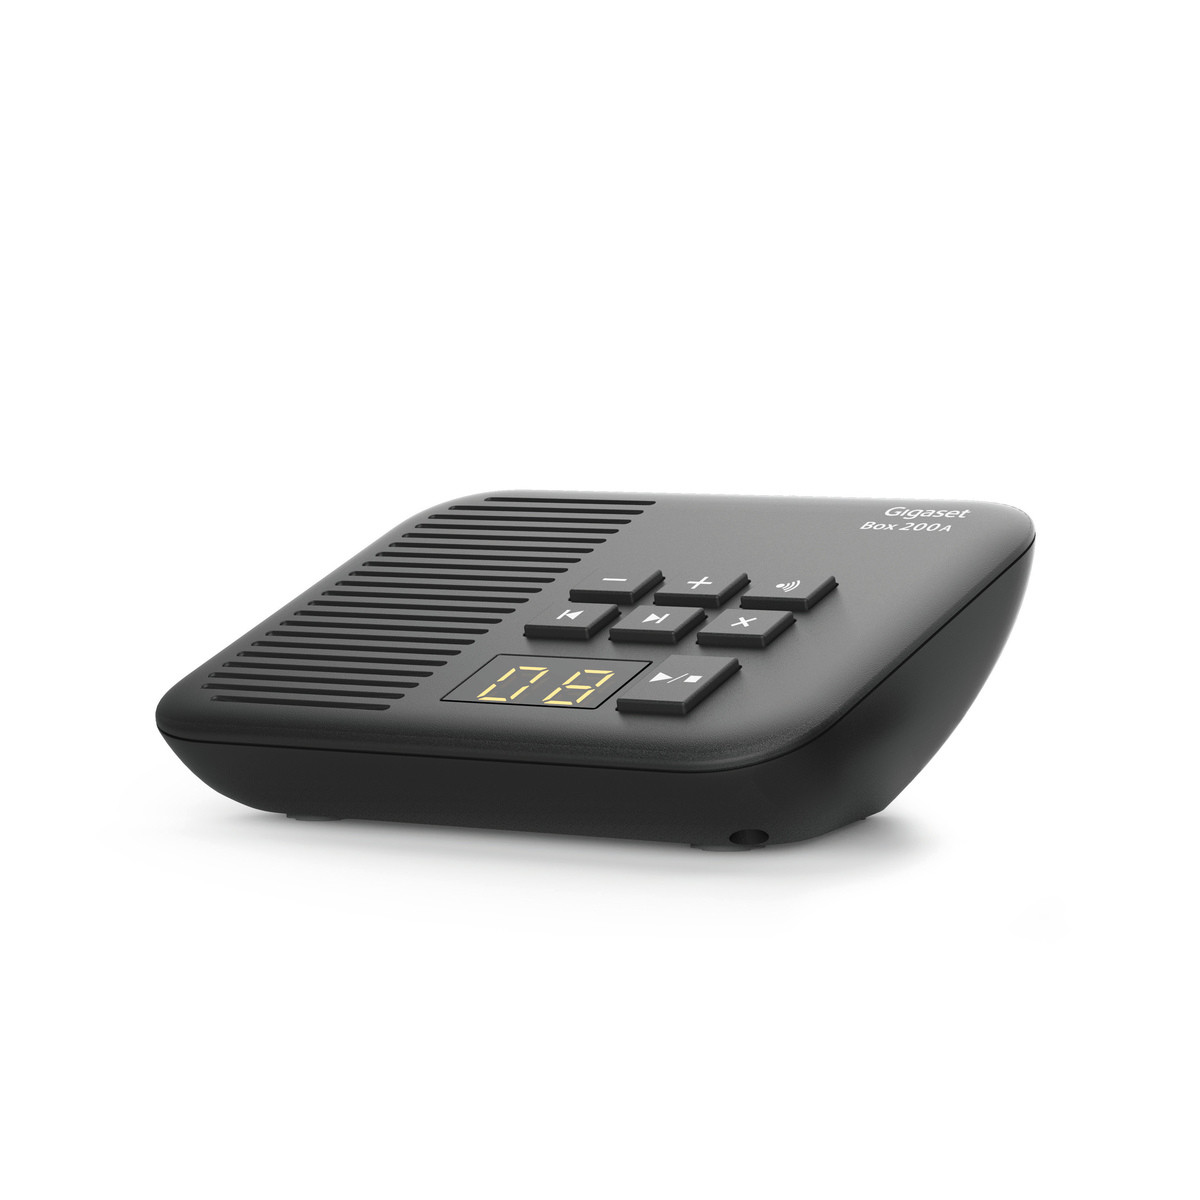 Gigaset Box 200A - DECT-Basis-Station mit Anrufbeantworter für Ihr eigenes Kommunikationssystem mit Gigaset Mobilteilen - Basis unterstützt 6 Mobilteile für den analogen Telefonanschluss, schwarz